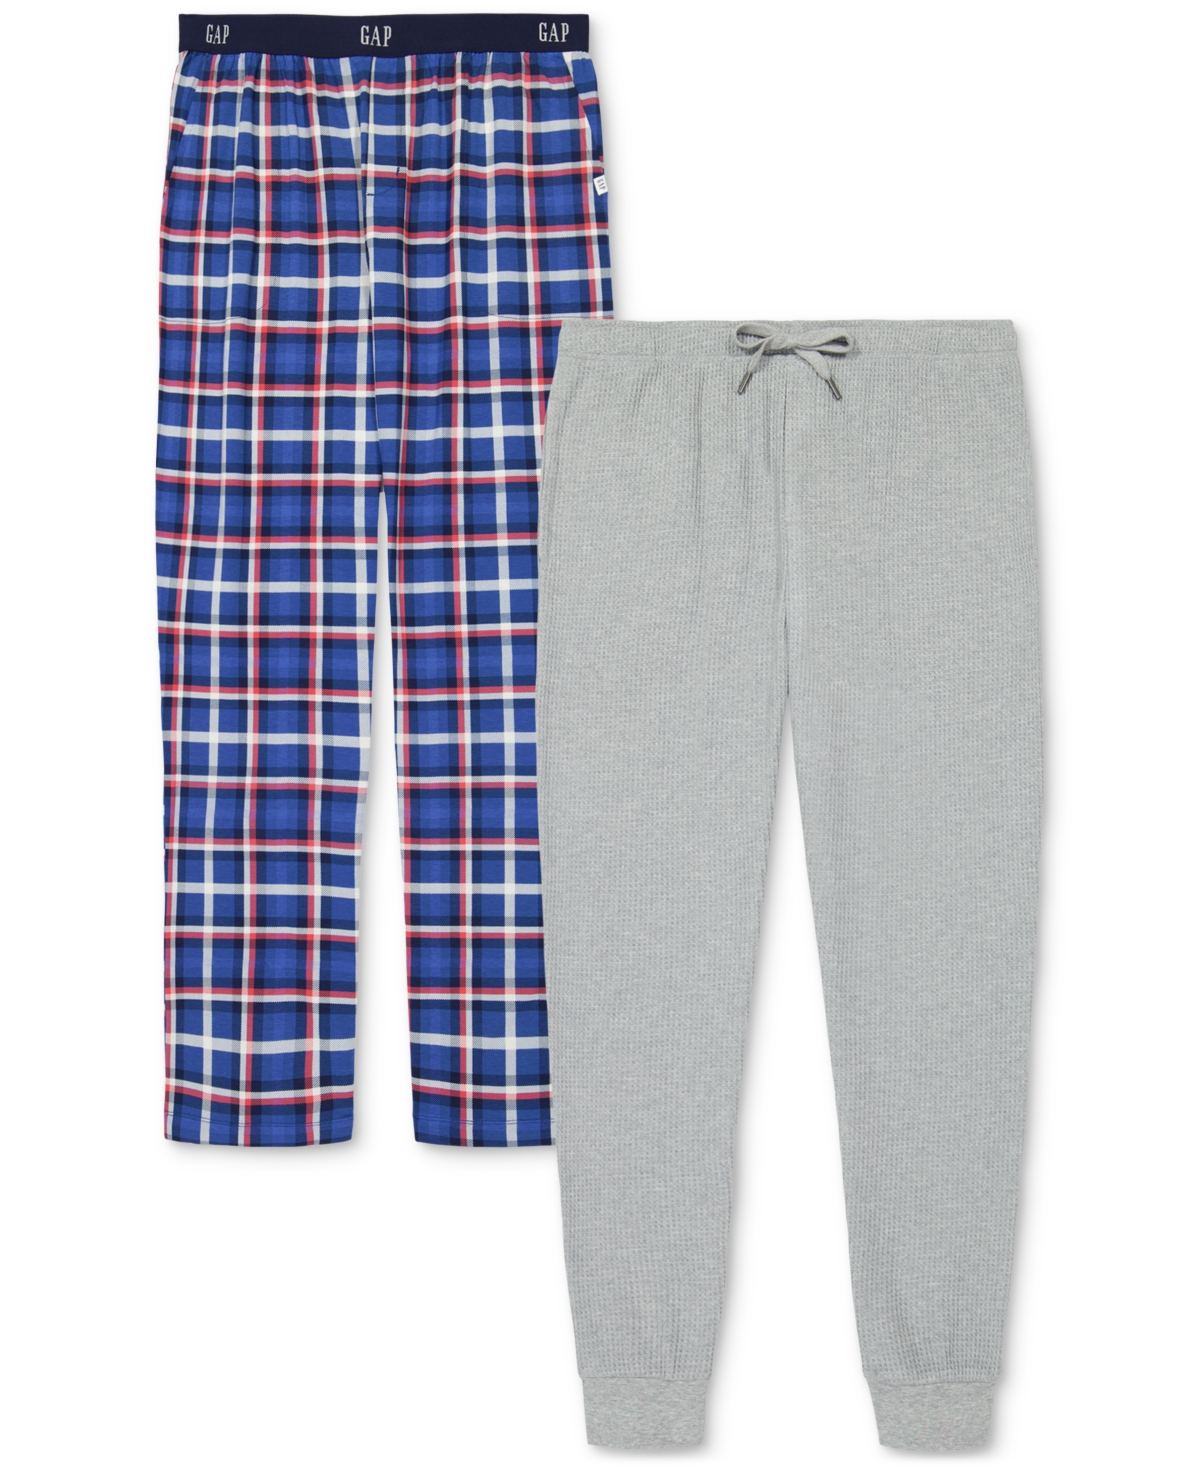 Men's 2-Pk. Plaid Straight-Leg Pajama Pants + Jogger - Red Plaid/ Black